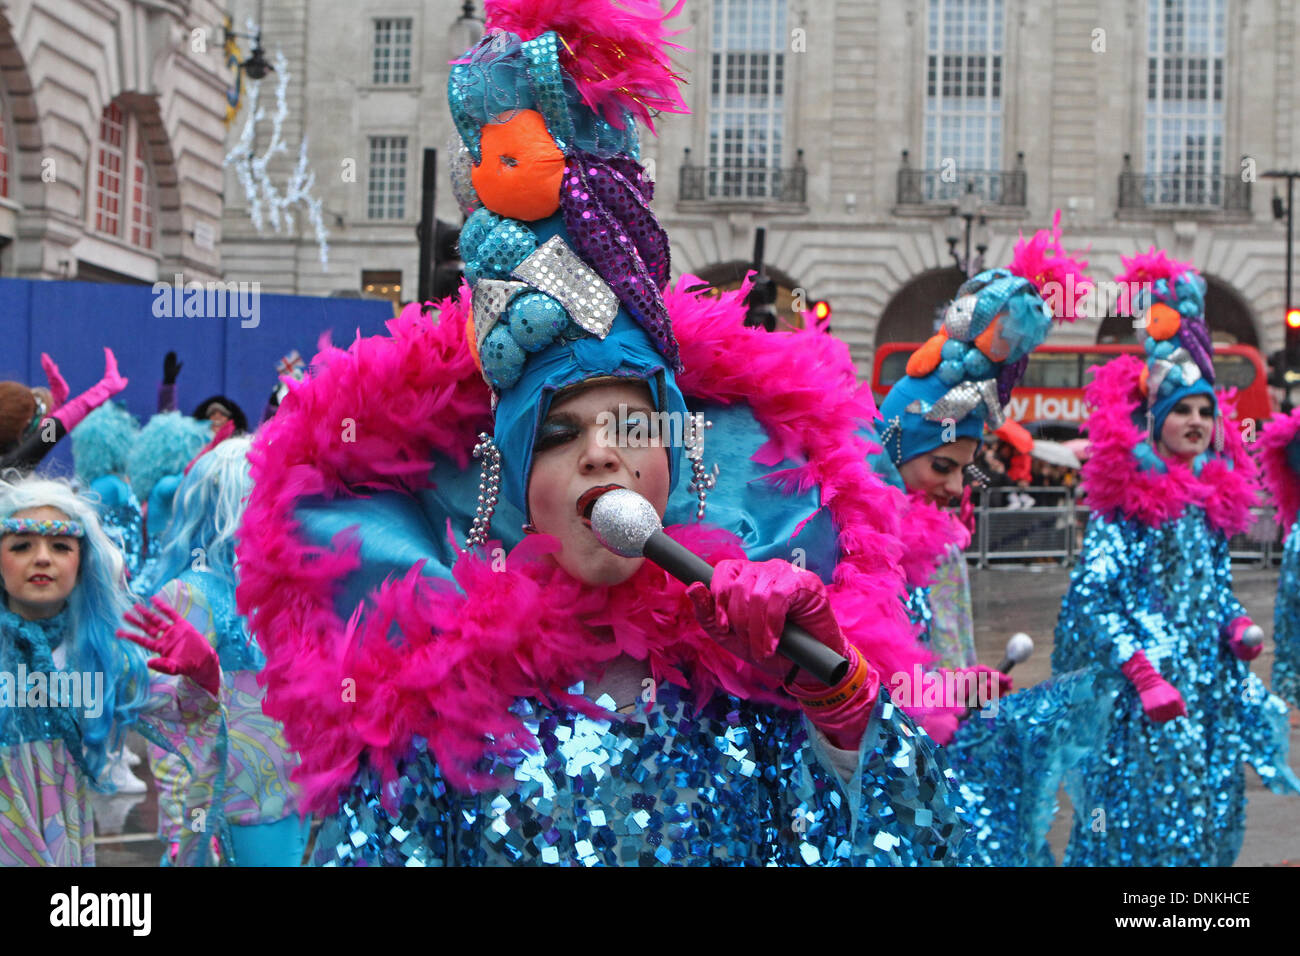 Londres, Reino Unido, 1 de enero de 2014,trajes coloridos en Londres el día de Año Nuevo de 2014 Desfile de crédito: Keith Larby/Alamy Live News Foto de stock